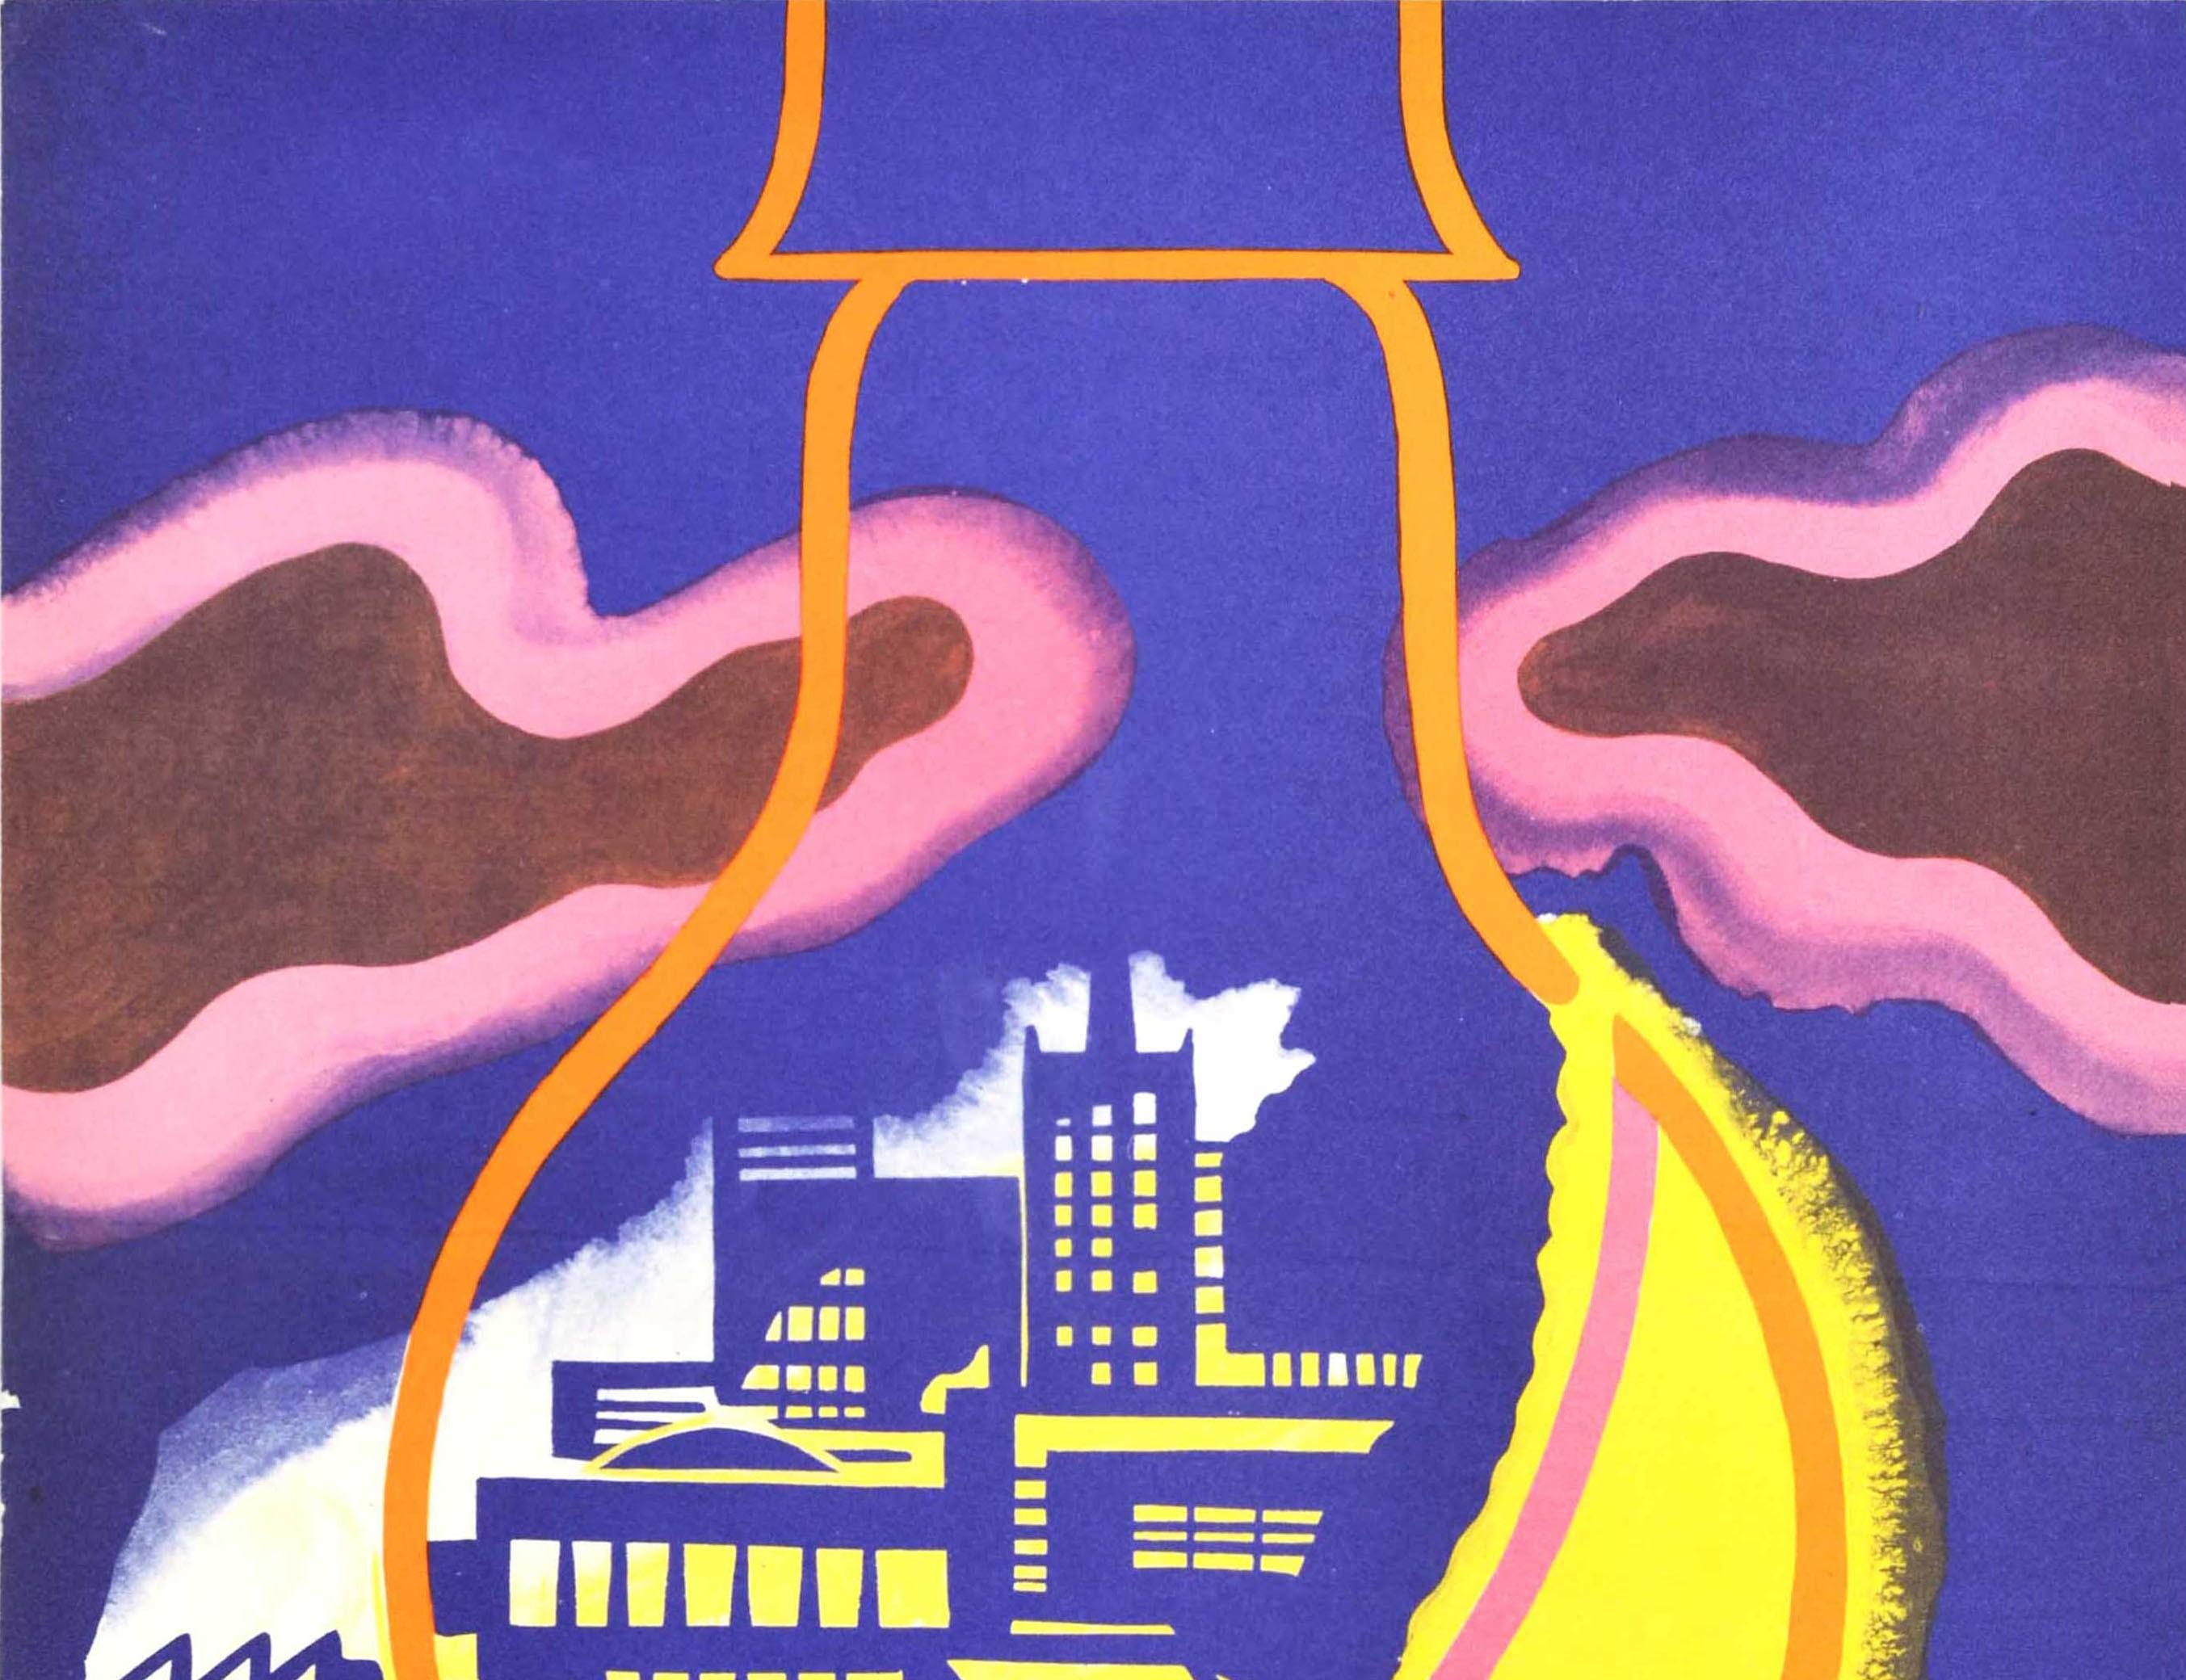 Originales sowjetisches Propagandaplakat zur Förderung des Energiesparens mit einem großartigen Design, das die Form einer elektrischen Glühbirne zeigt, die einen Halbmond in Gelb bildet, wobei die Lichter in den Gebäuden vor dem blauen Hintergrund